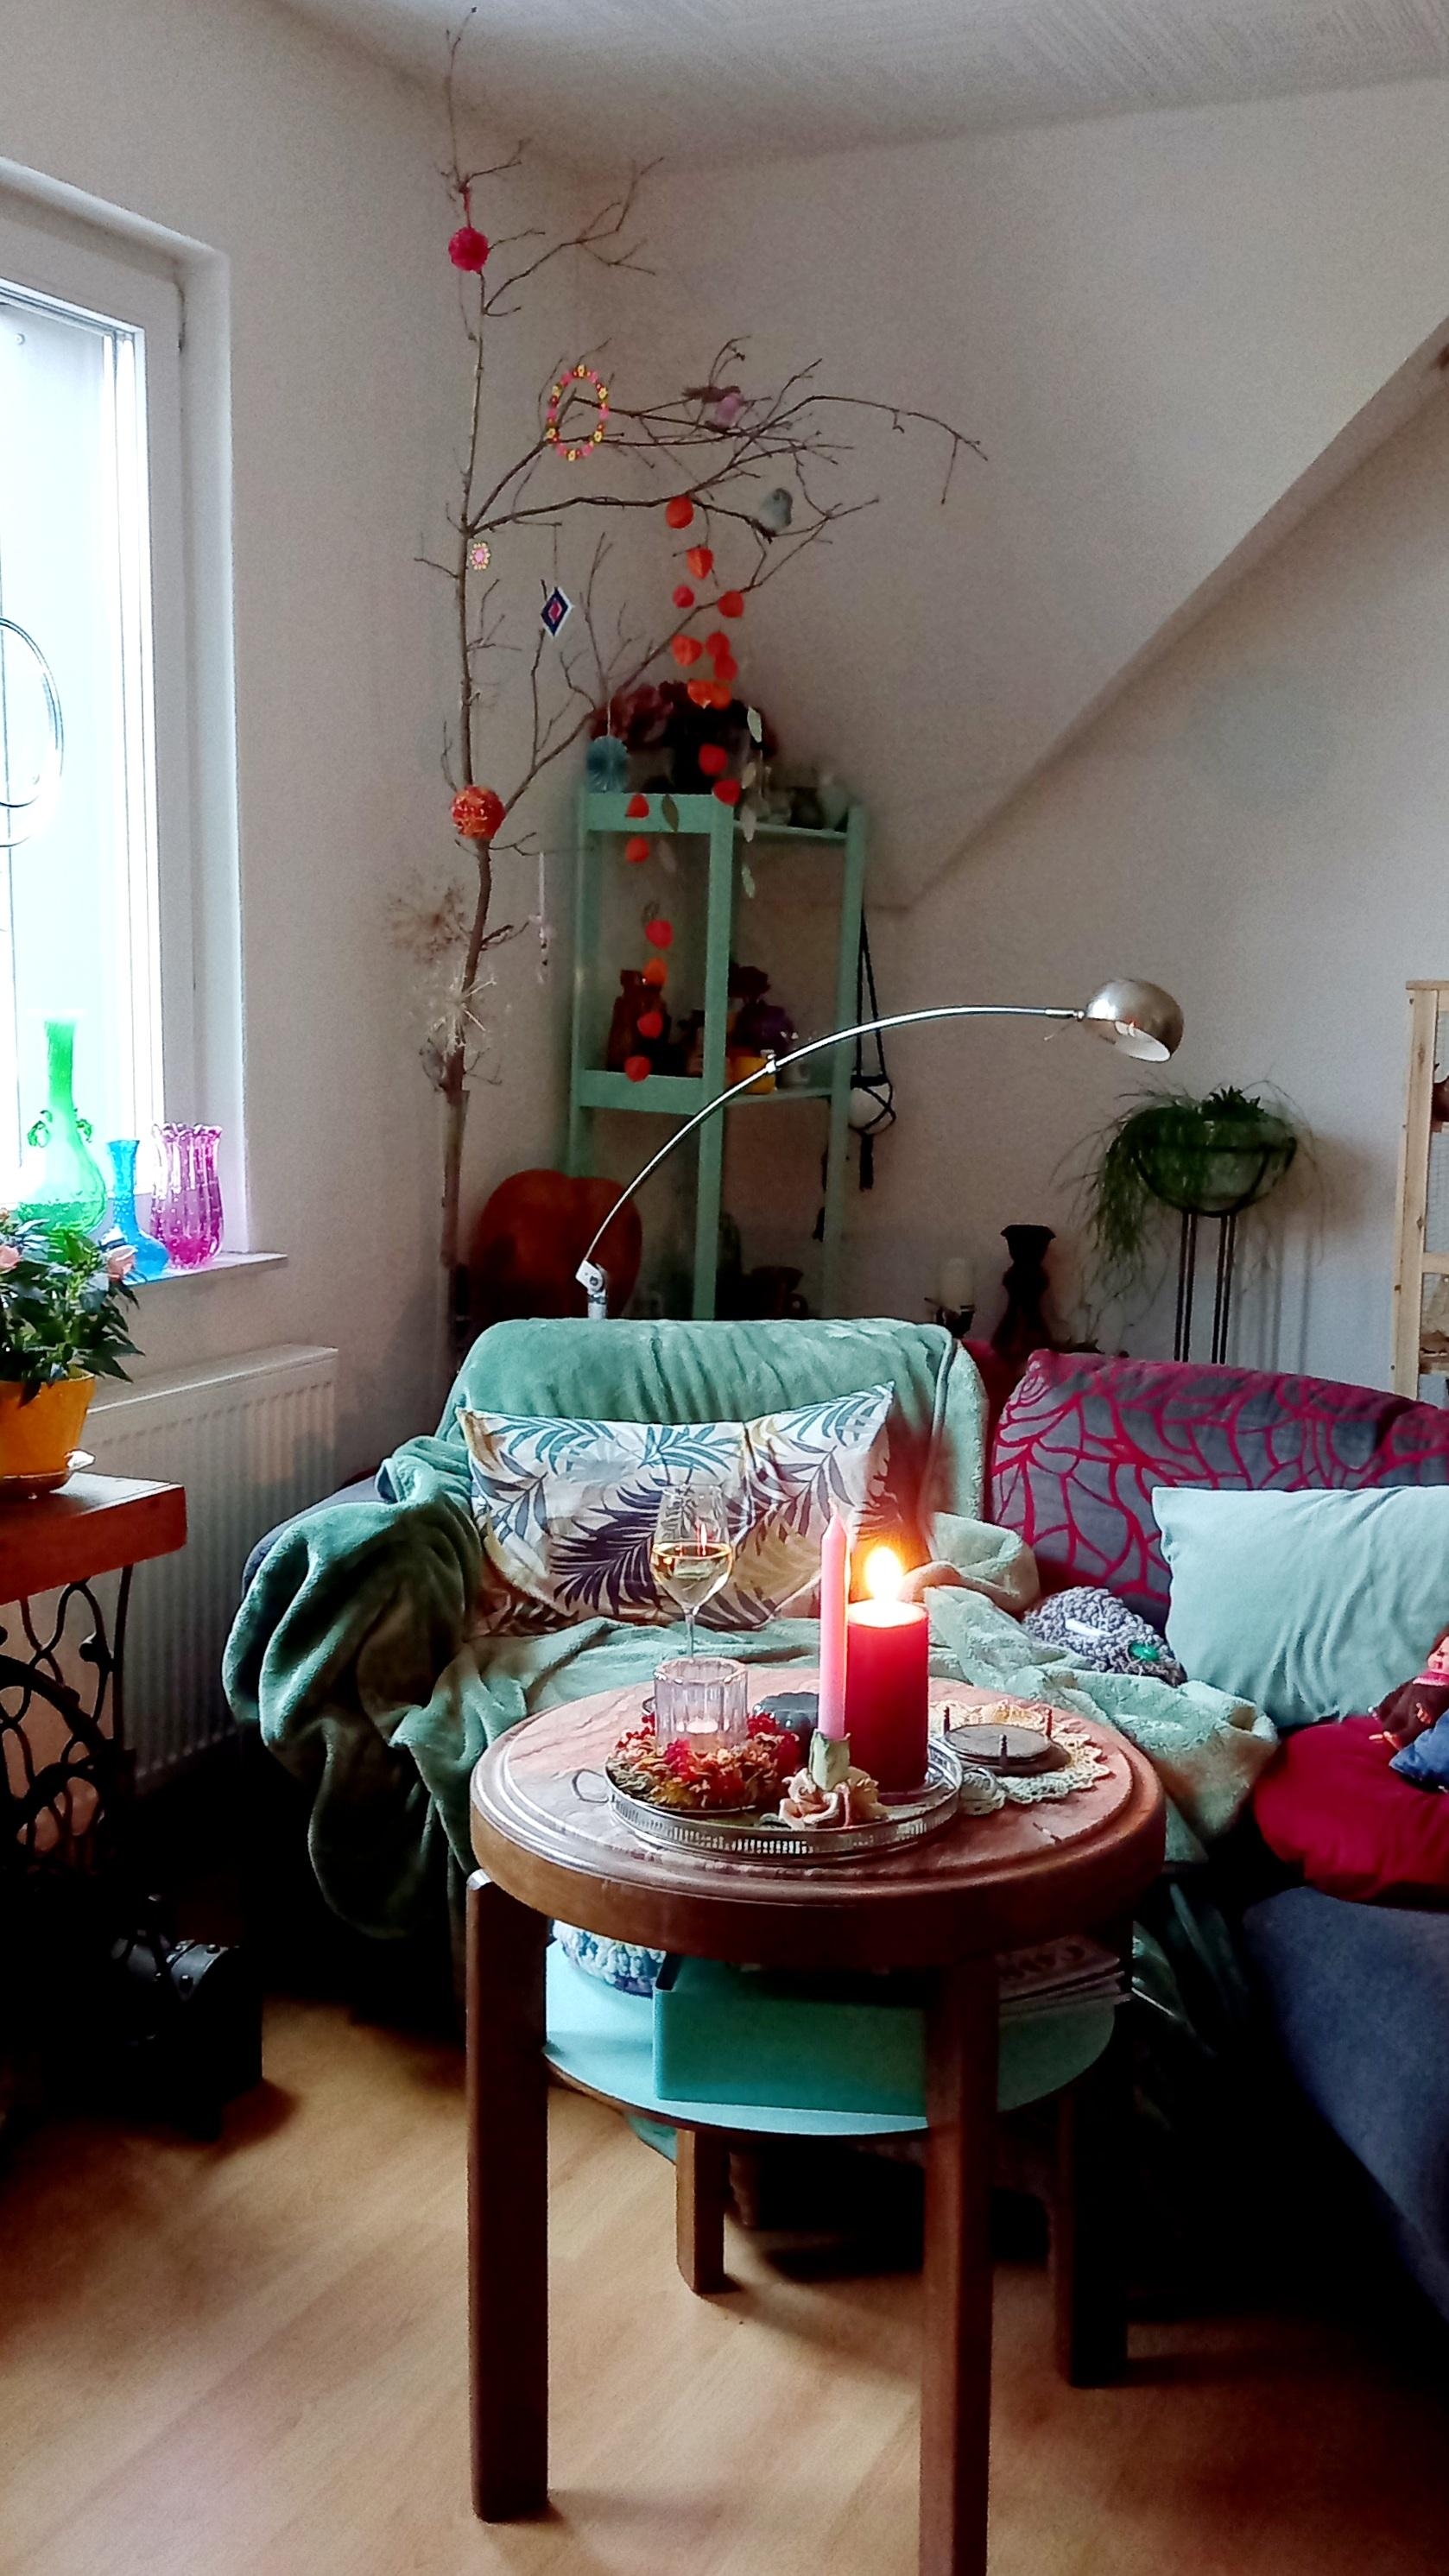 #kuschelplatz #wohnzimmer #kerzenlicht #wein #feierabend #gemütlich #bunt #farbenfroh 